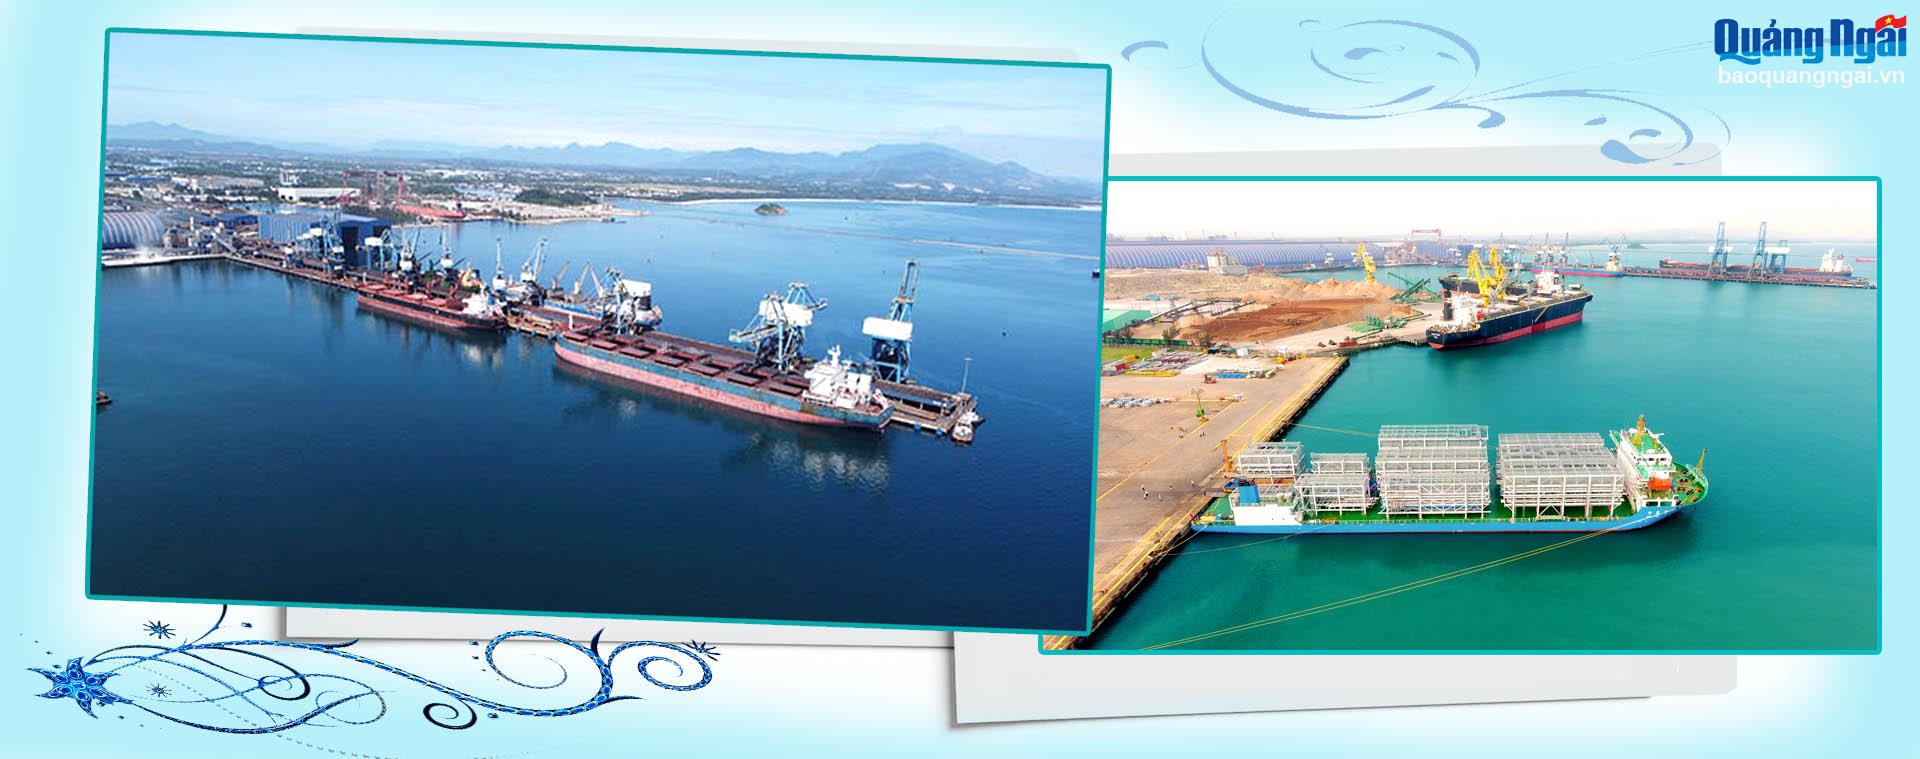 Ngành công nghiệp của tỉnh đang có sự phát triển vượt bậc (bên trái: Cảng Hòa Phát Dung Quất; bên phải: Doosan Vina xuất khẩu sản phẩm ra nước ngoài). Ảnh: PV